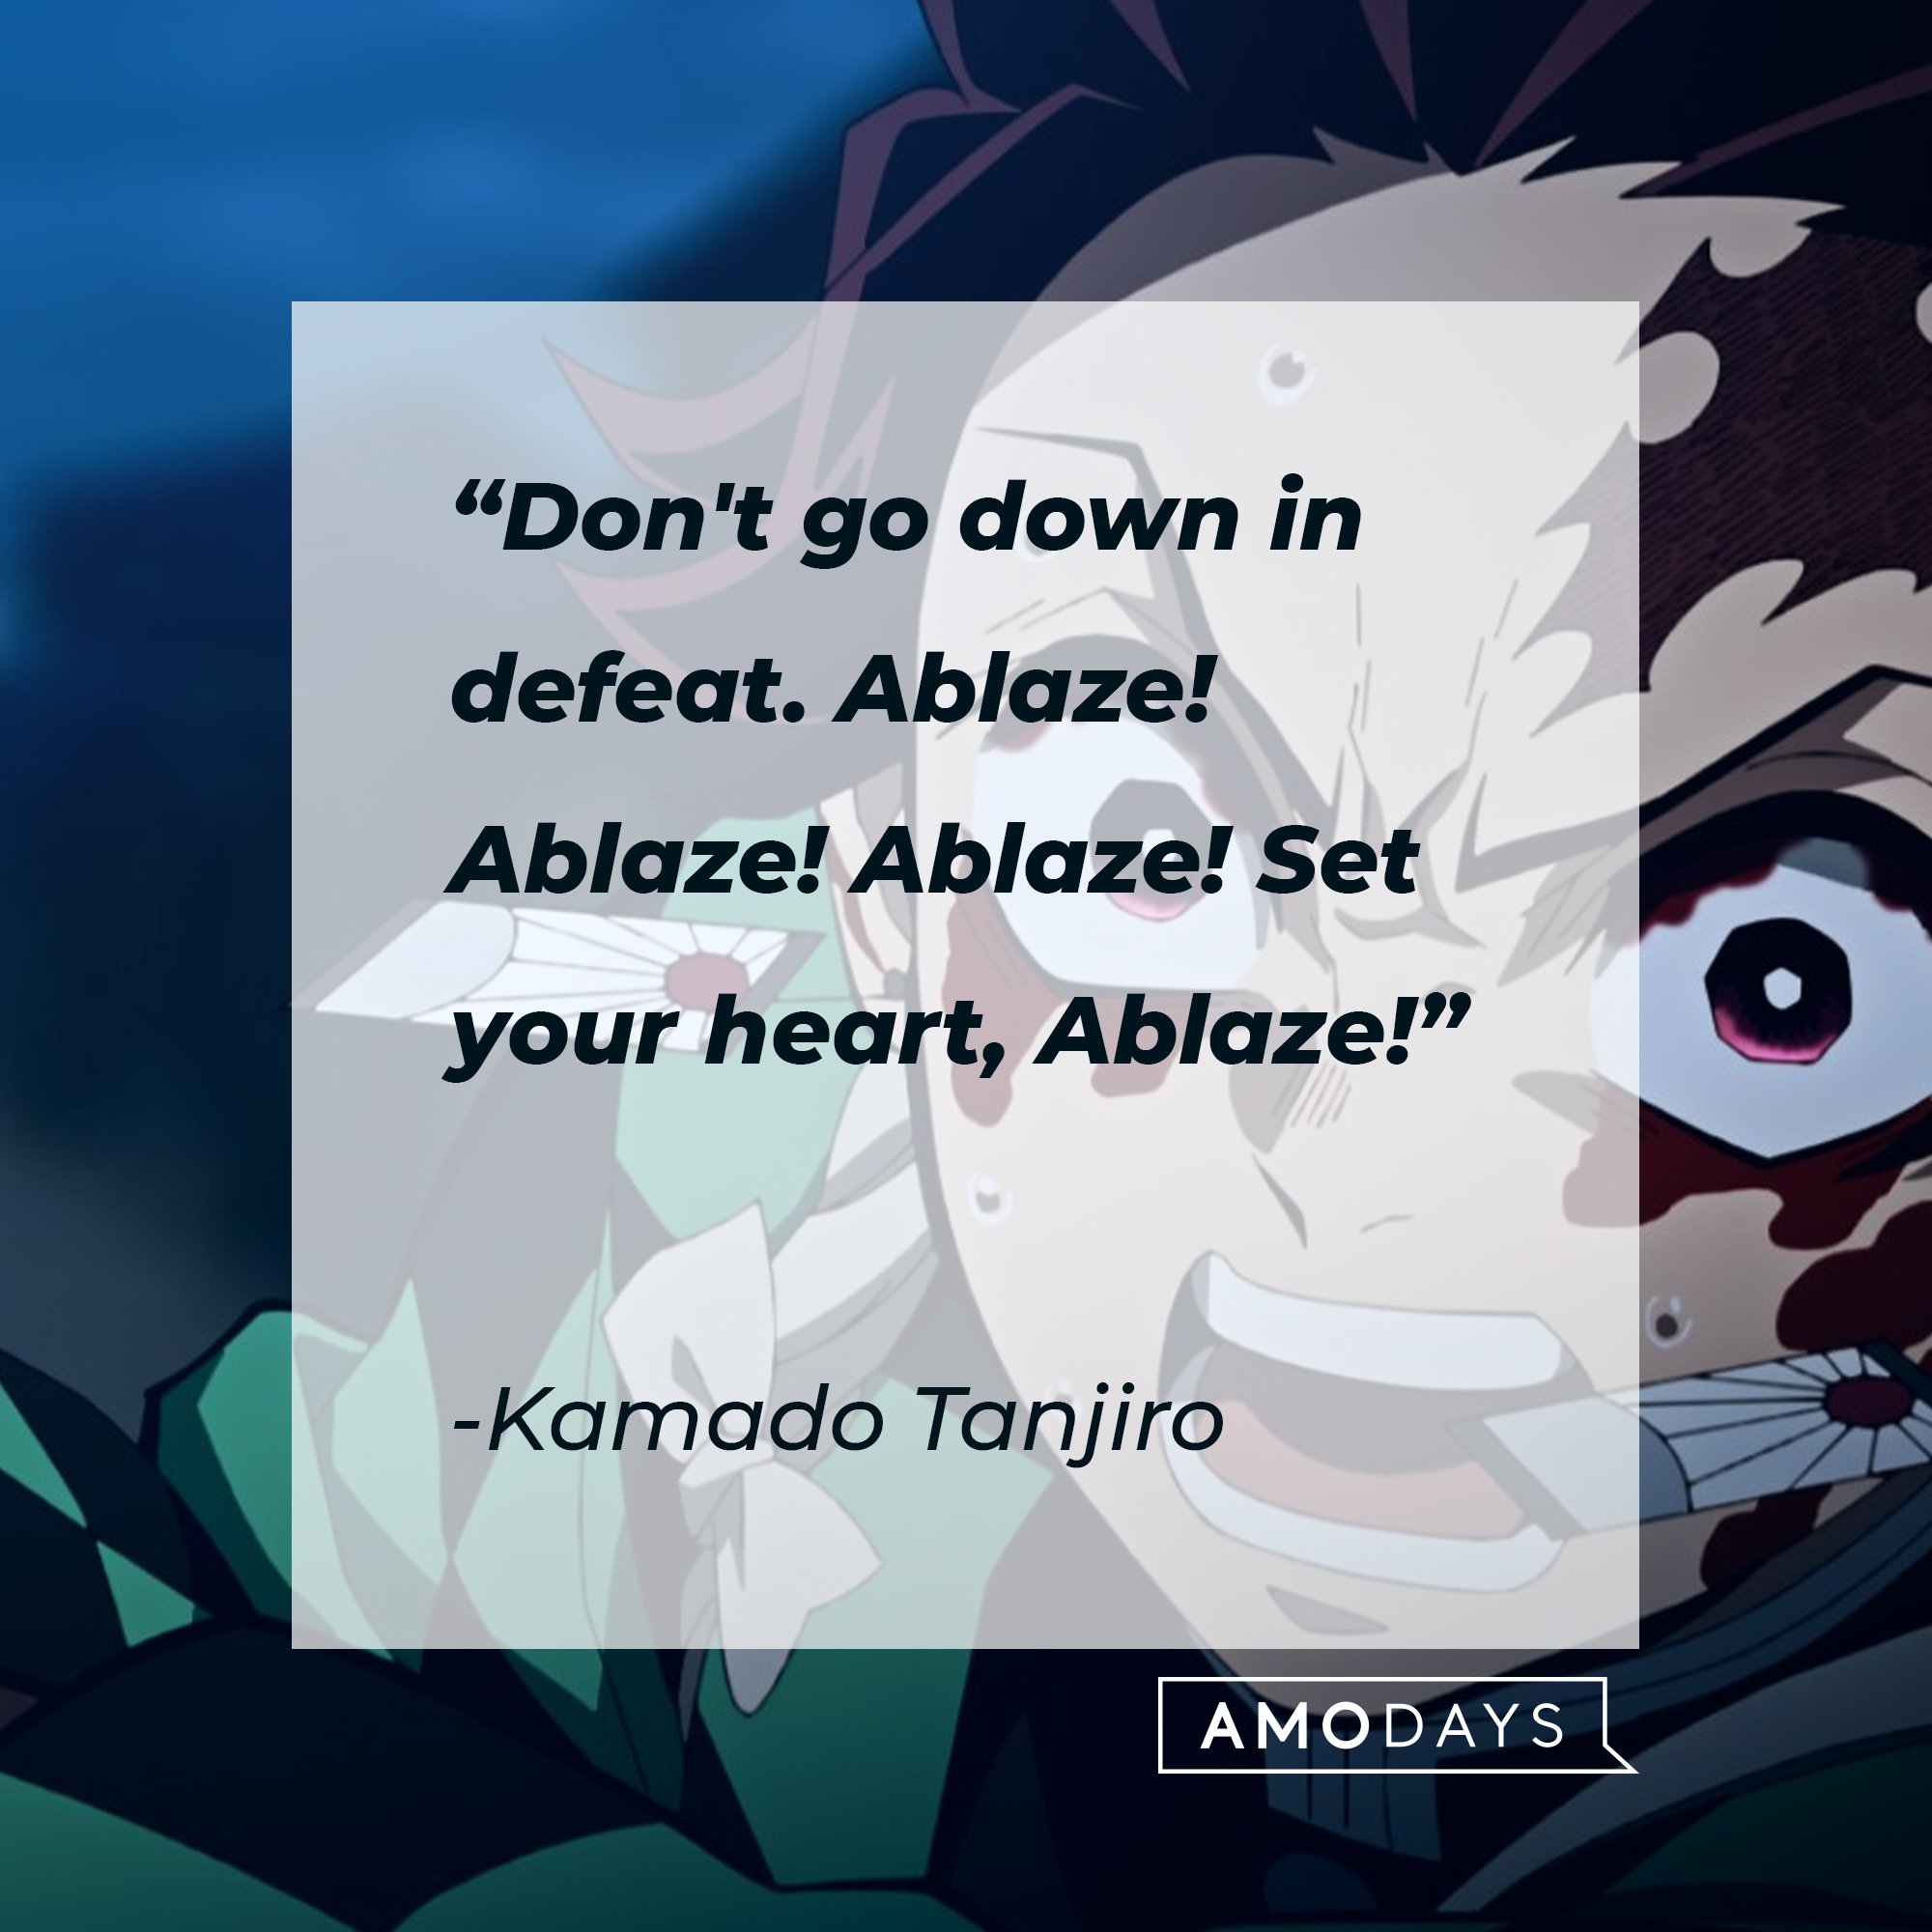 Kamado Tanjiro’s quote: "Don't go down in defeat. Ablaze! Ablaze! Ablaze! Set your heart, Ablaze!" | Image: AmoDays